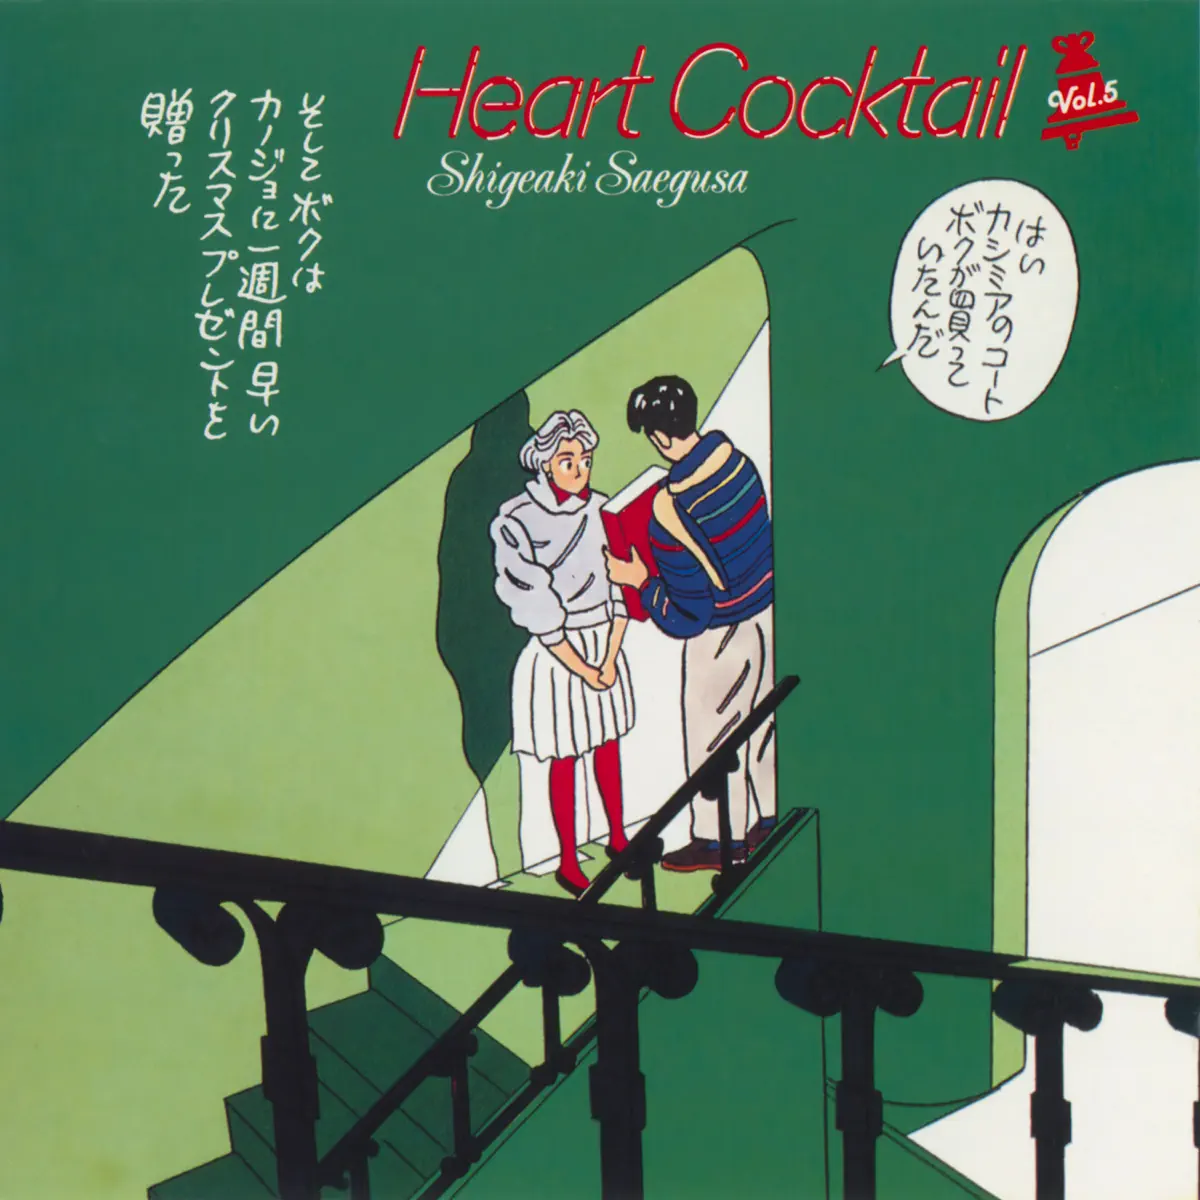 三枝成彰 - 心形鸡尾酒 Heart Cocktail, Vol. 5 (1987) [iTunes Plus AAC M4A]-新房子